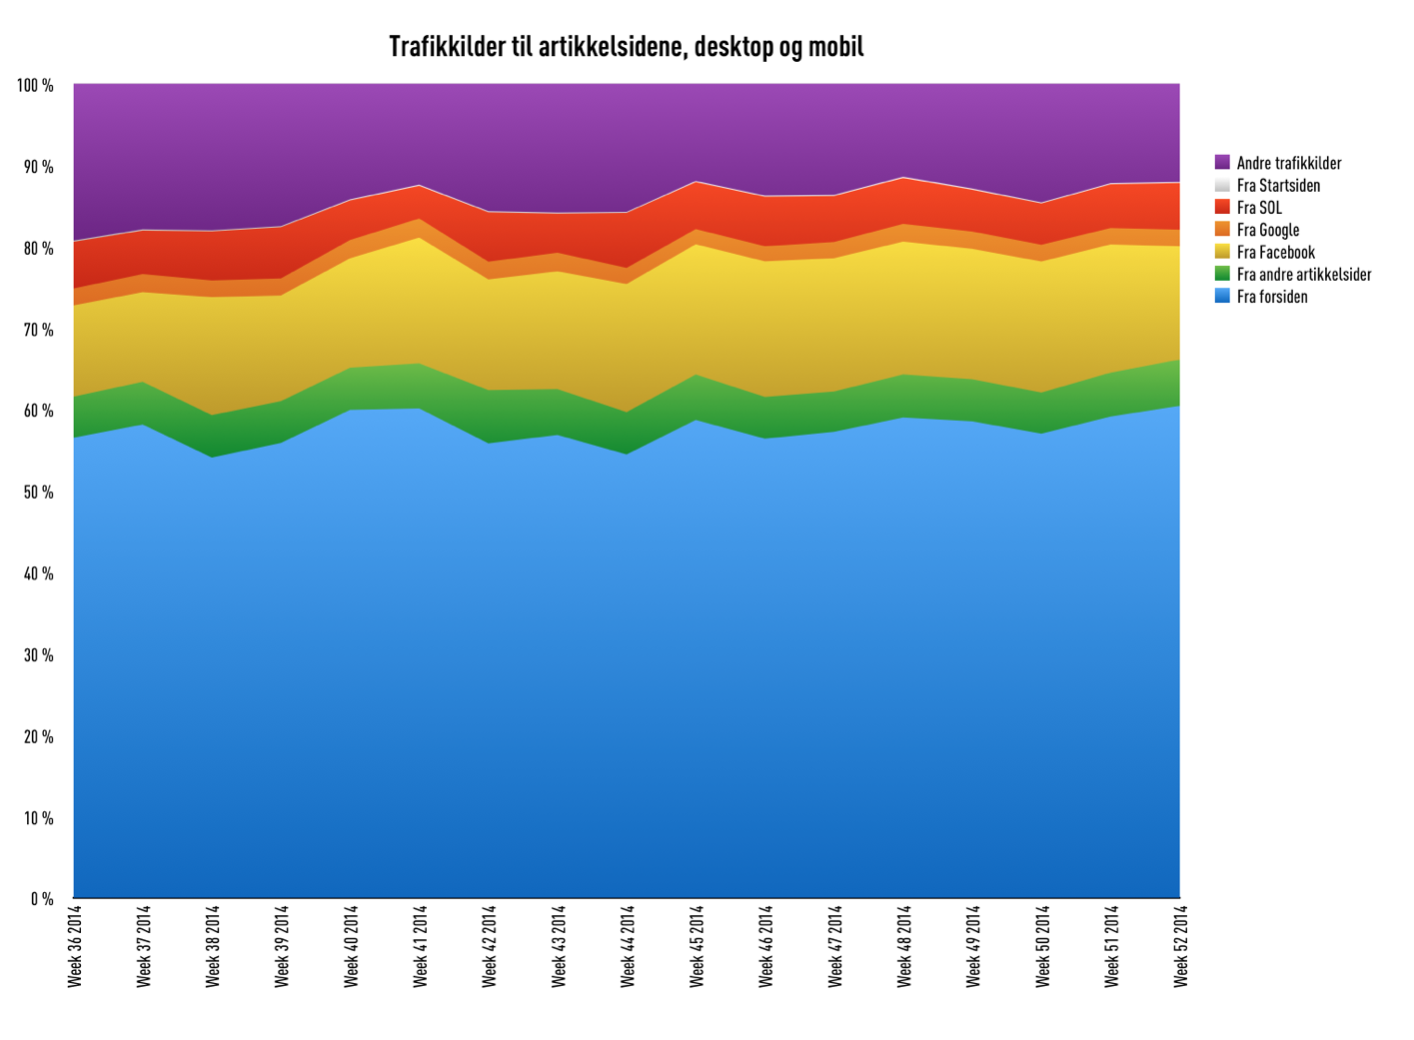 Trafikkilder til artikkelsider, prosentandeler, Amedias aviser, uke 36-52 2014 (kilde: Amedia)